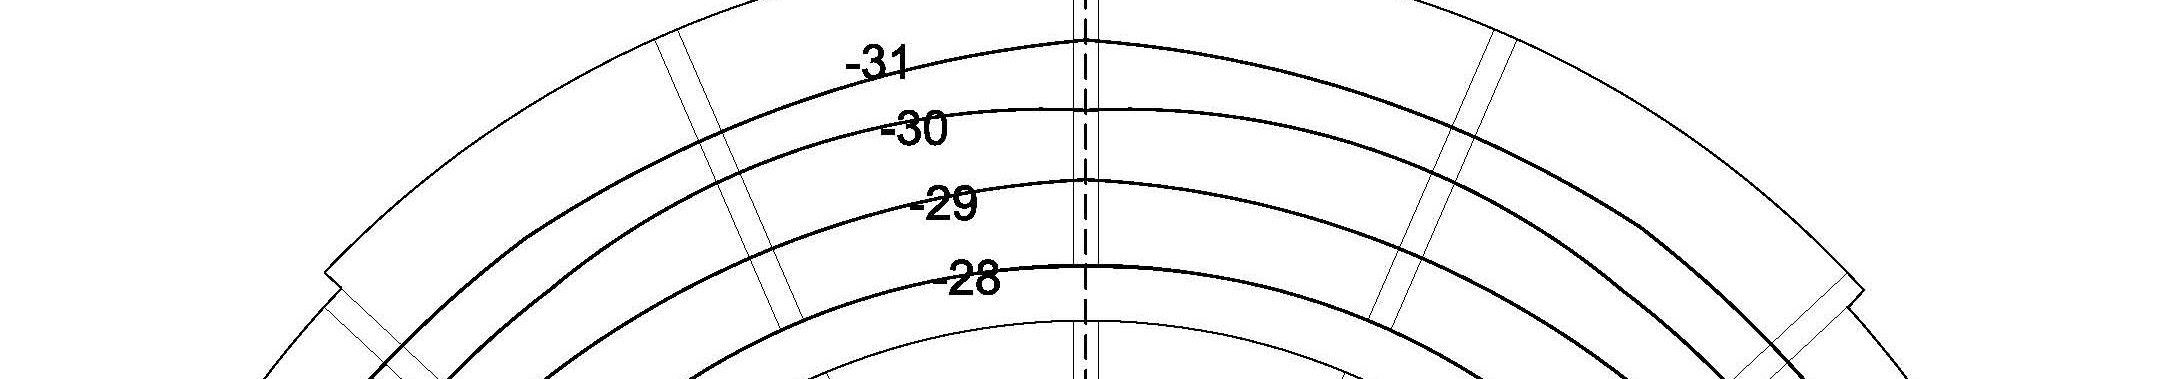 ΑΚ06_7 κρόασης (για ηχοανακλάσεις από την ορχήστρα) στο άνω διάζωµα και ενισχύουν τις ενεργειακές αποκλίσεις (µεταξύ χαµηλών /ψηλών βαθµίδων, κεντρικών /ακραίων κερκίδων),